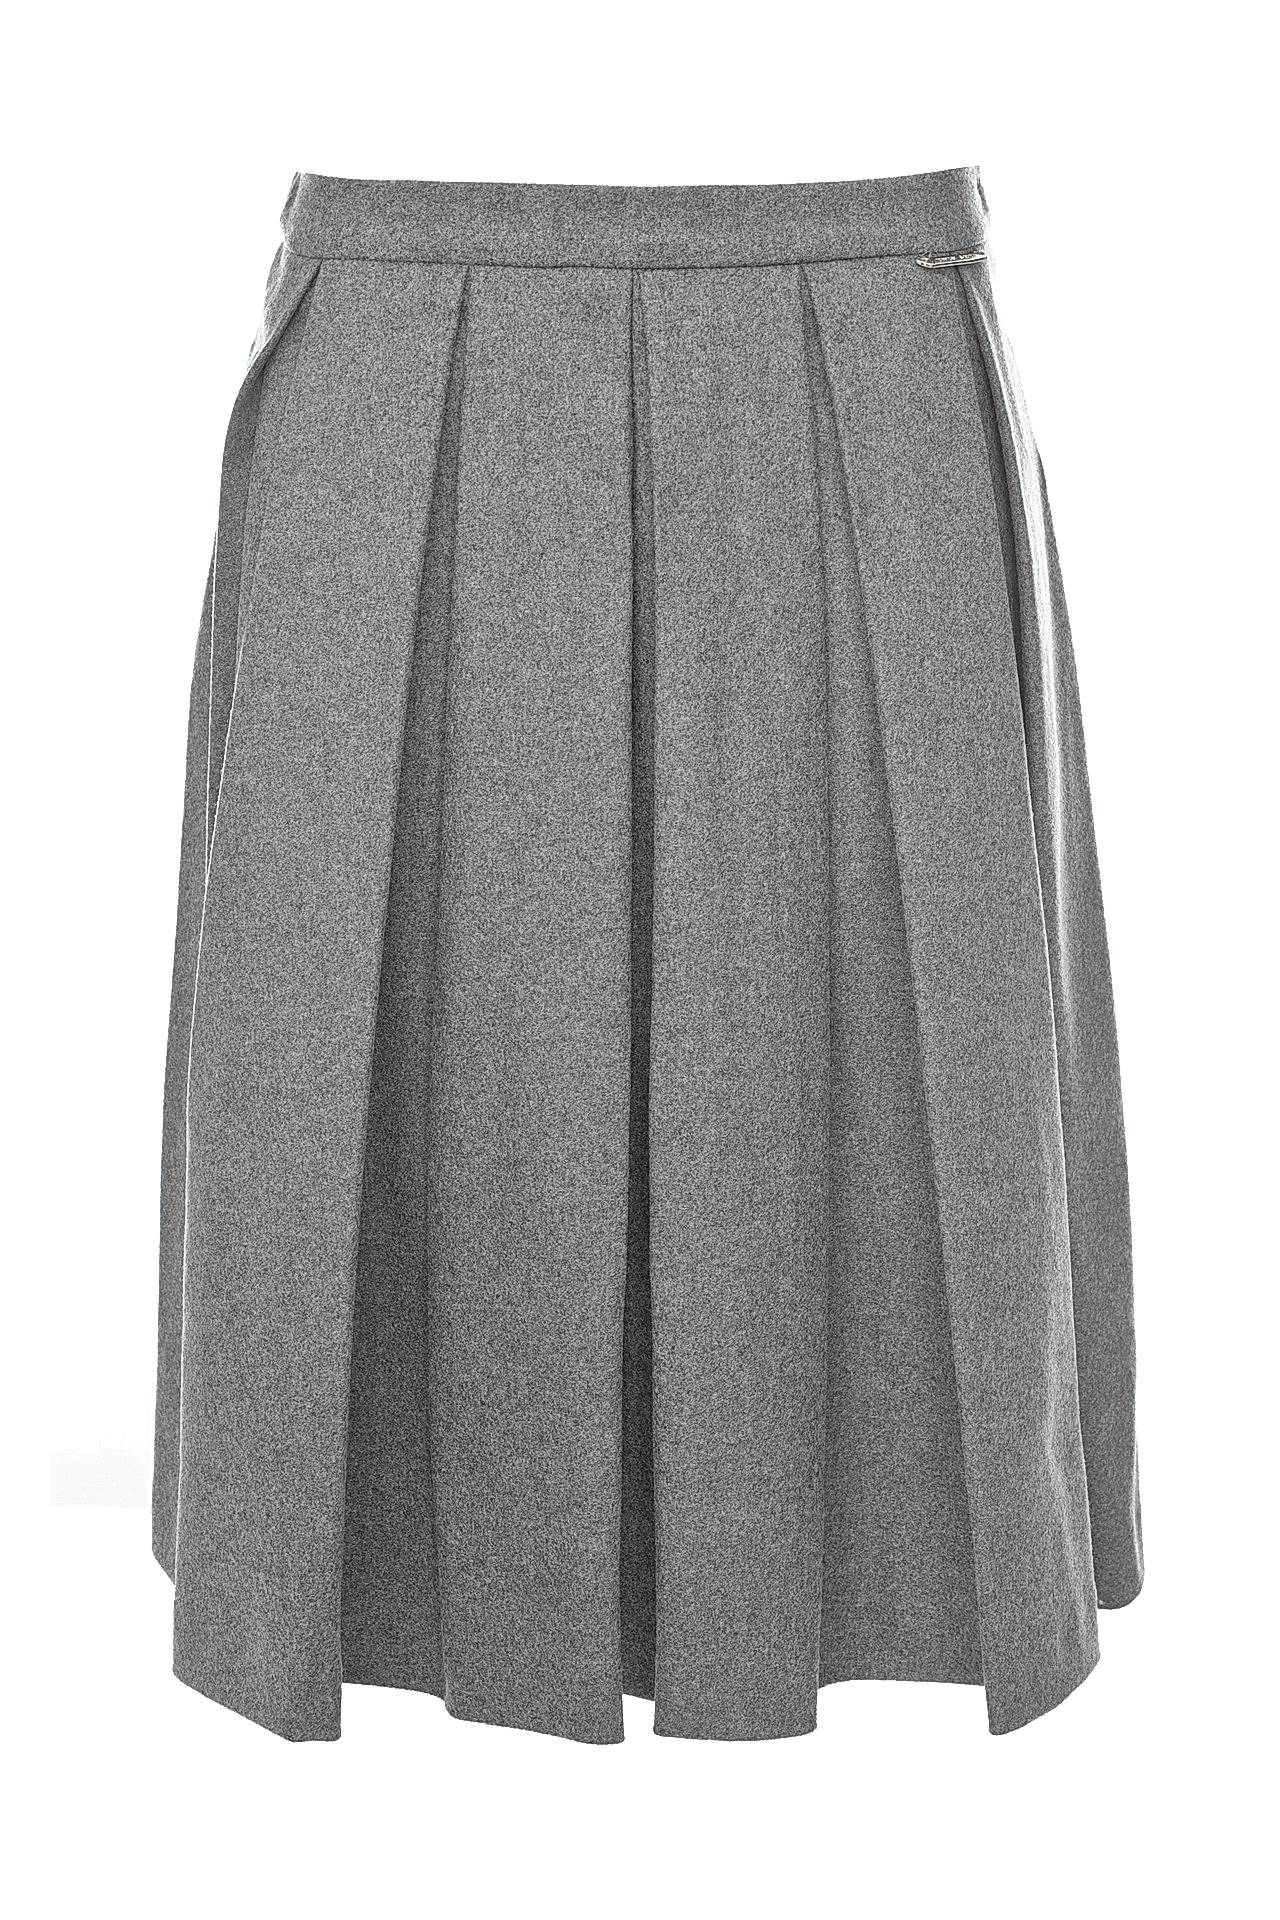 Одежда женская Юбка TWIN-SET (A6TTA625C/17.1). Купить за 12400 руб.